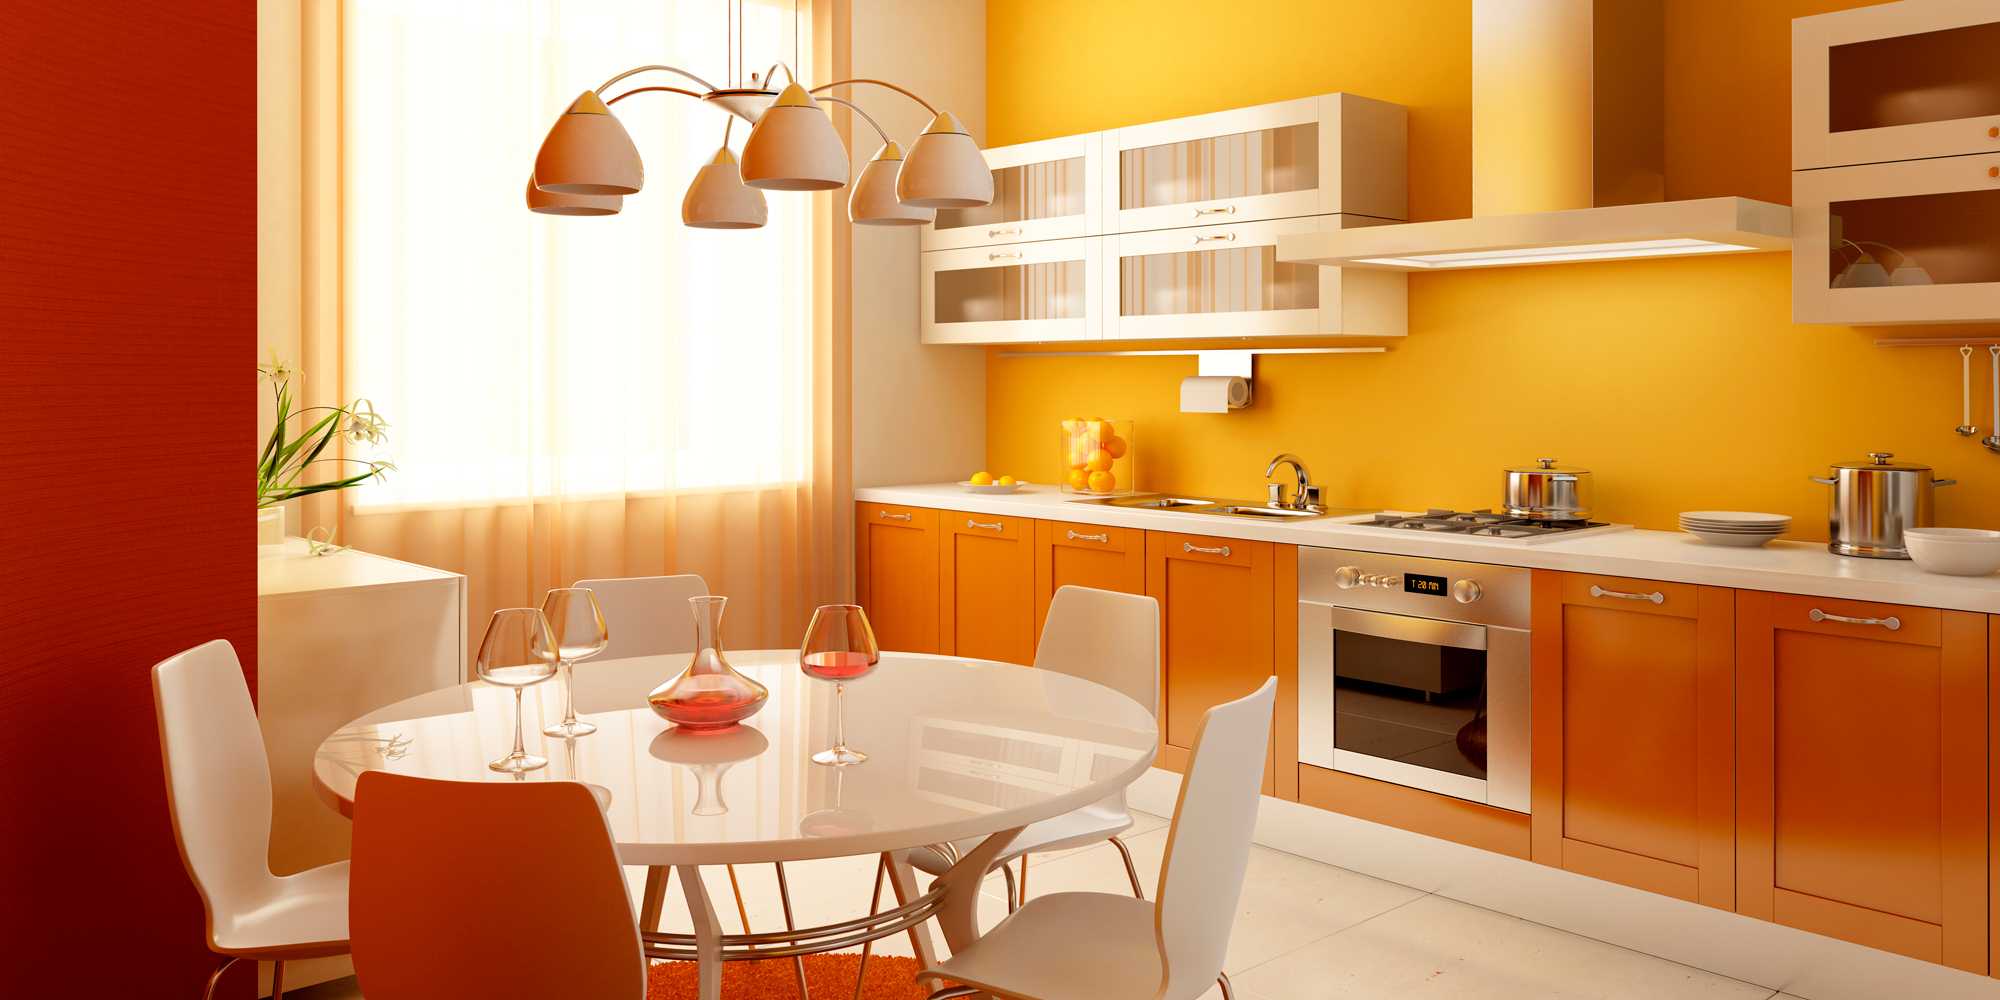 o combinație de portocaliu strălucitor în stilul dormitorului cu alte culori